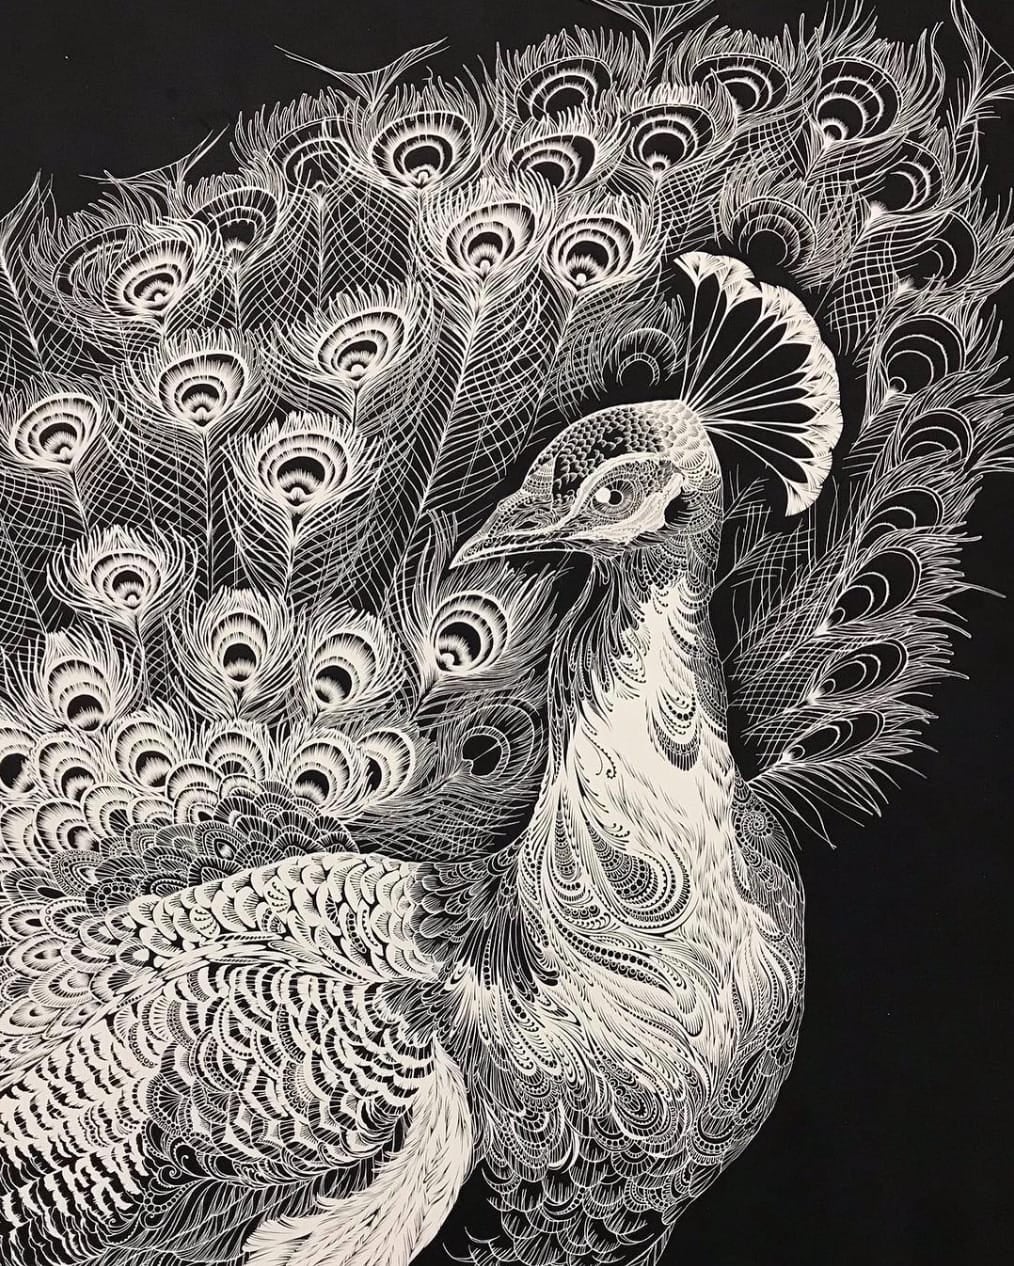 ศิลปินชาวญี่ปุ่น Masayo Fukuda ตัดกระดาษรูปสัตว์ต่าง ๆ